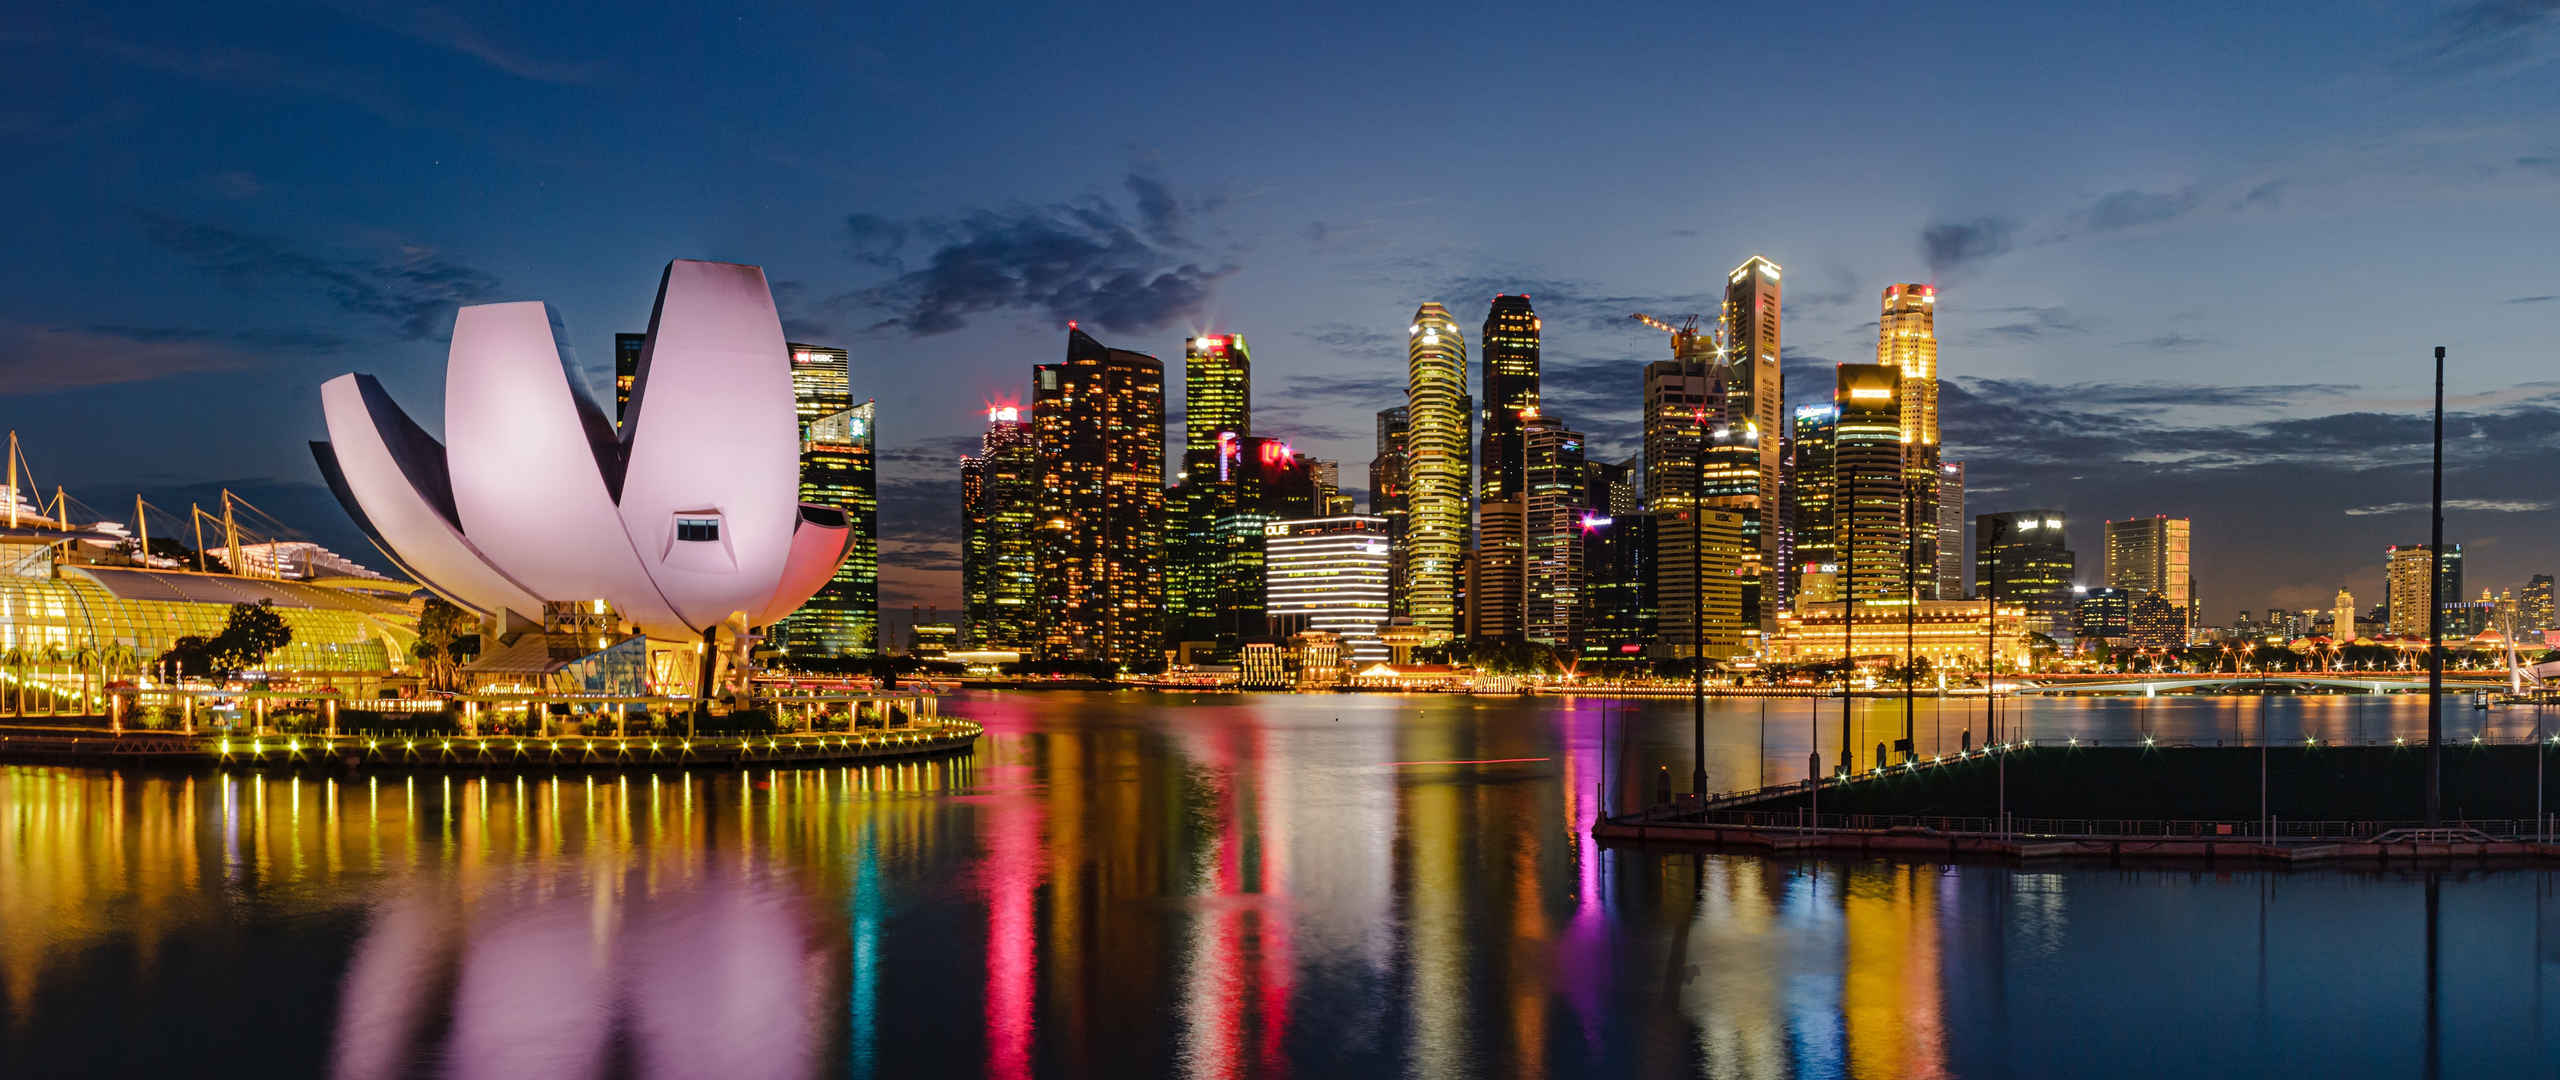 新加坡滨海湾花园城市夜景5120x2160壁纸-